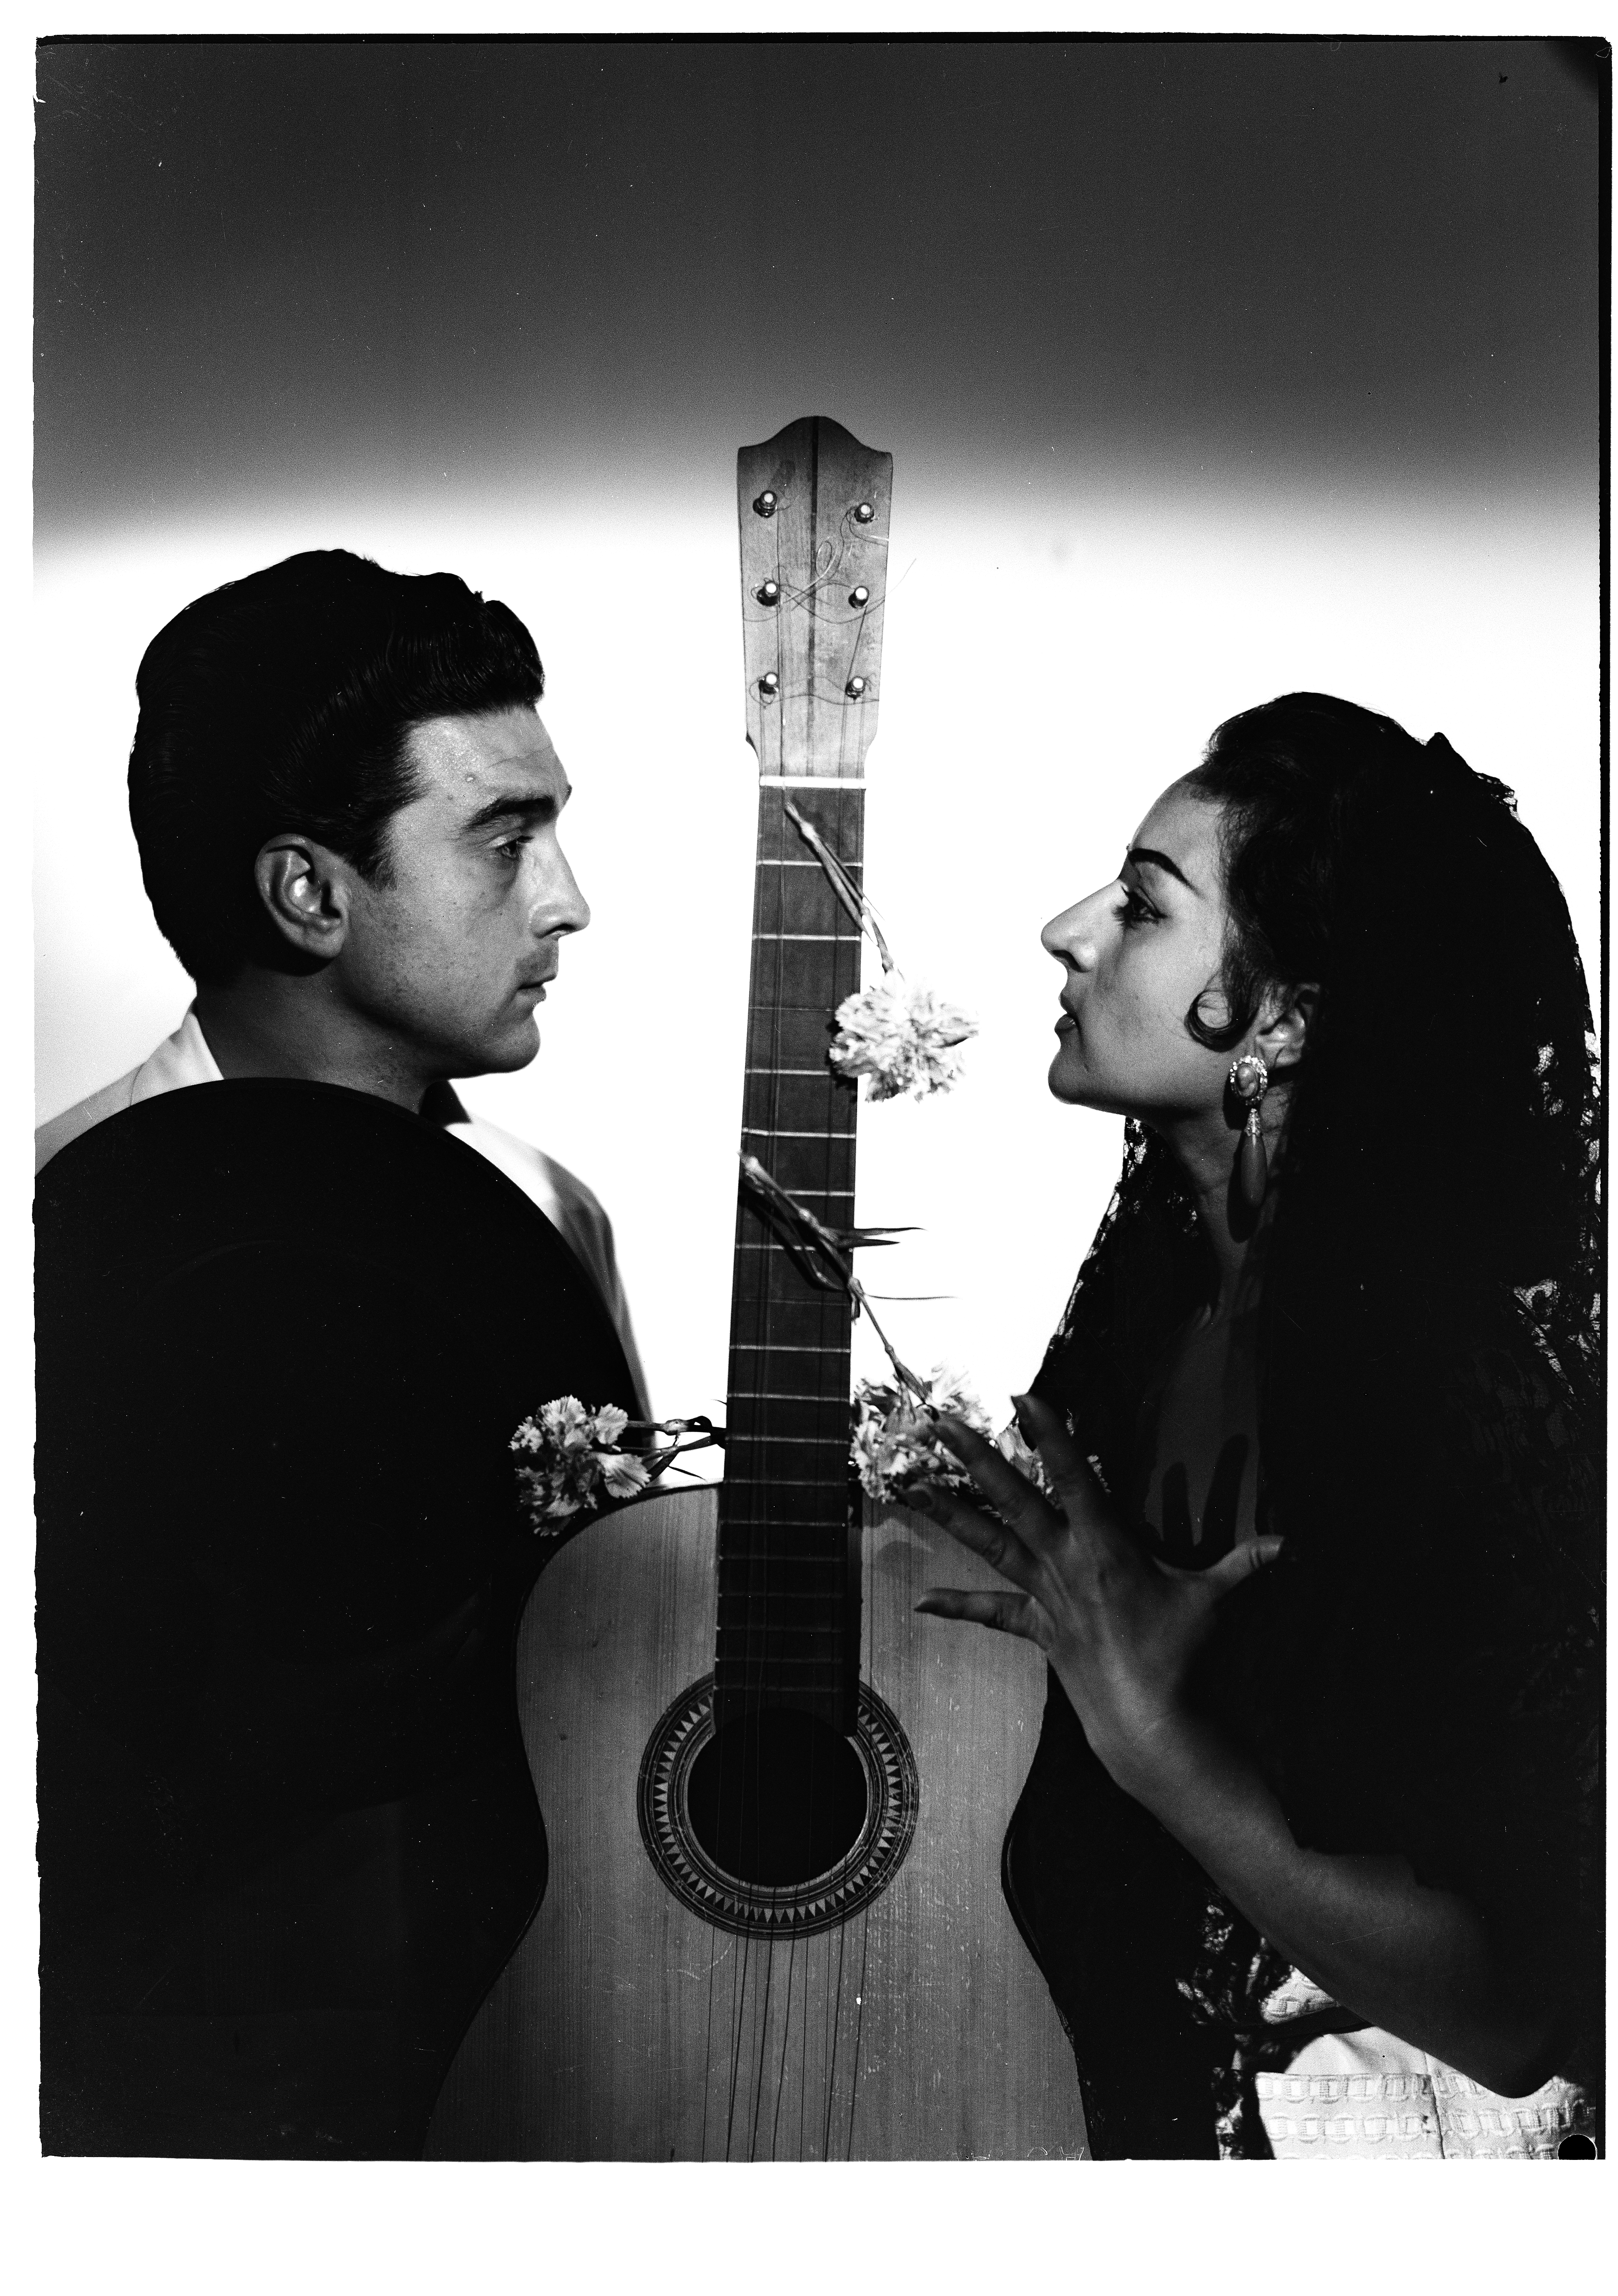 Lola Flores y El Pescaílla, en una imagen del fotógrafo Ibáñez de 1958.